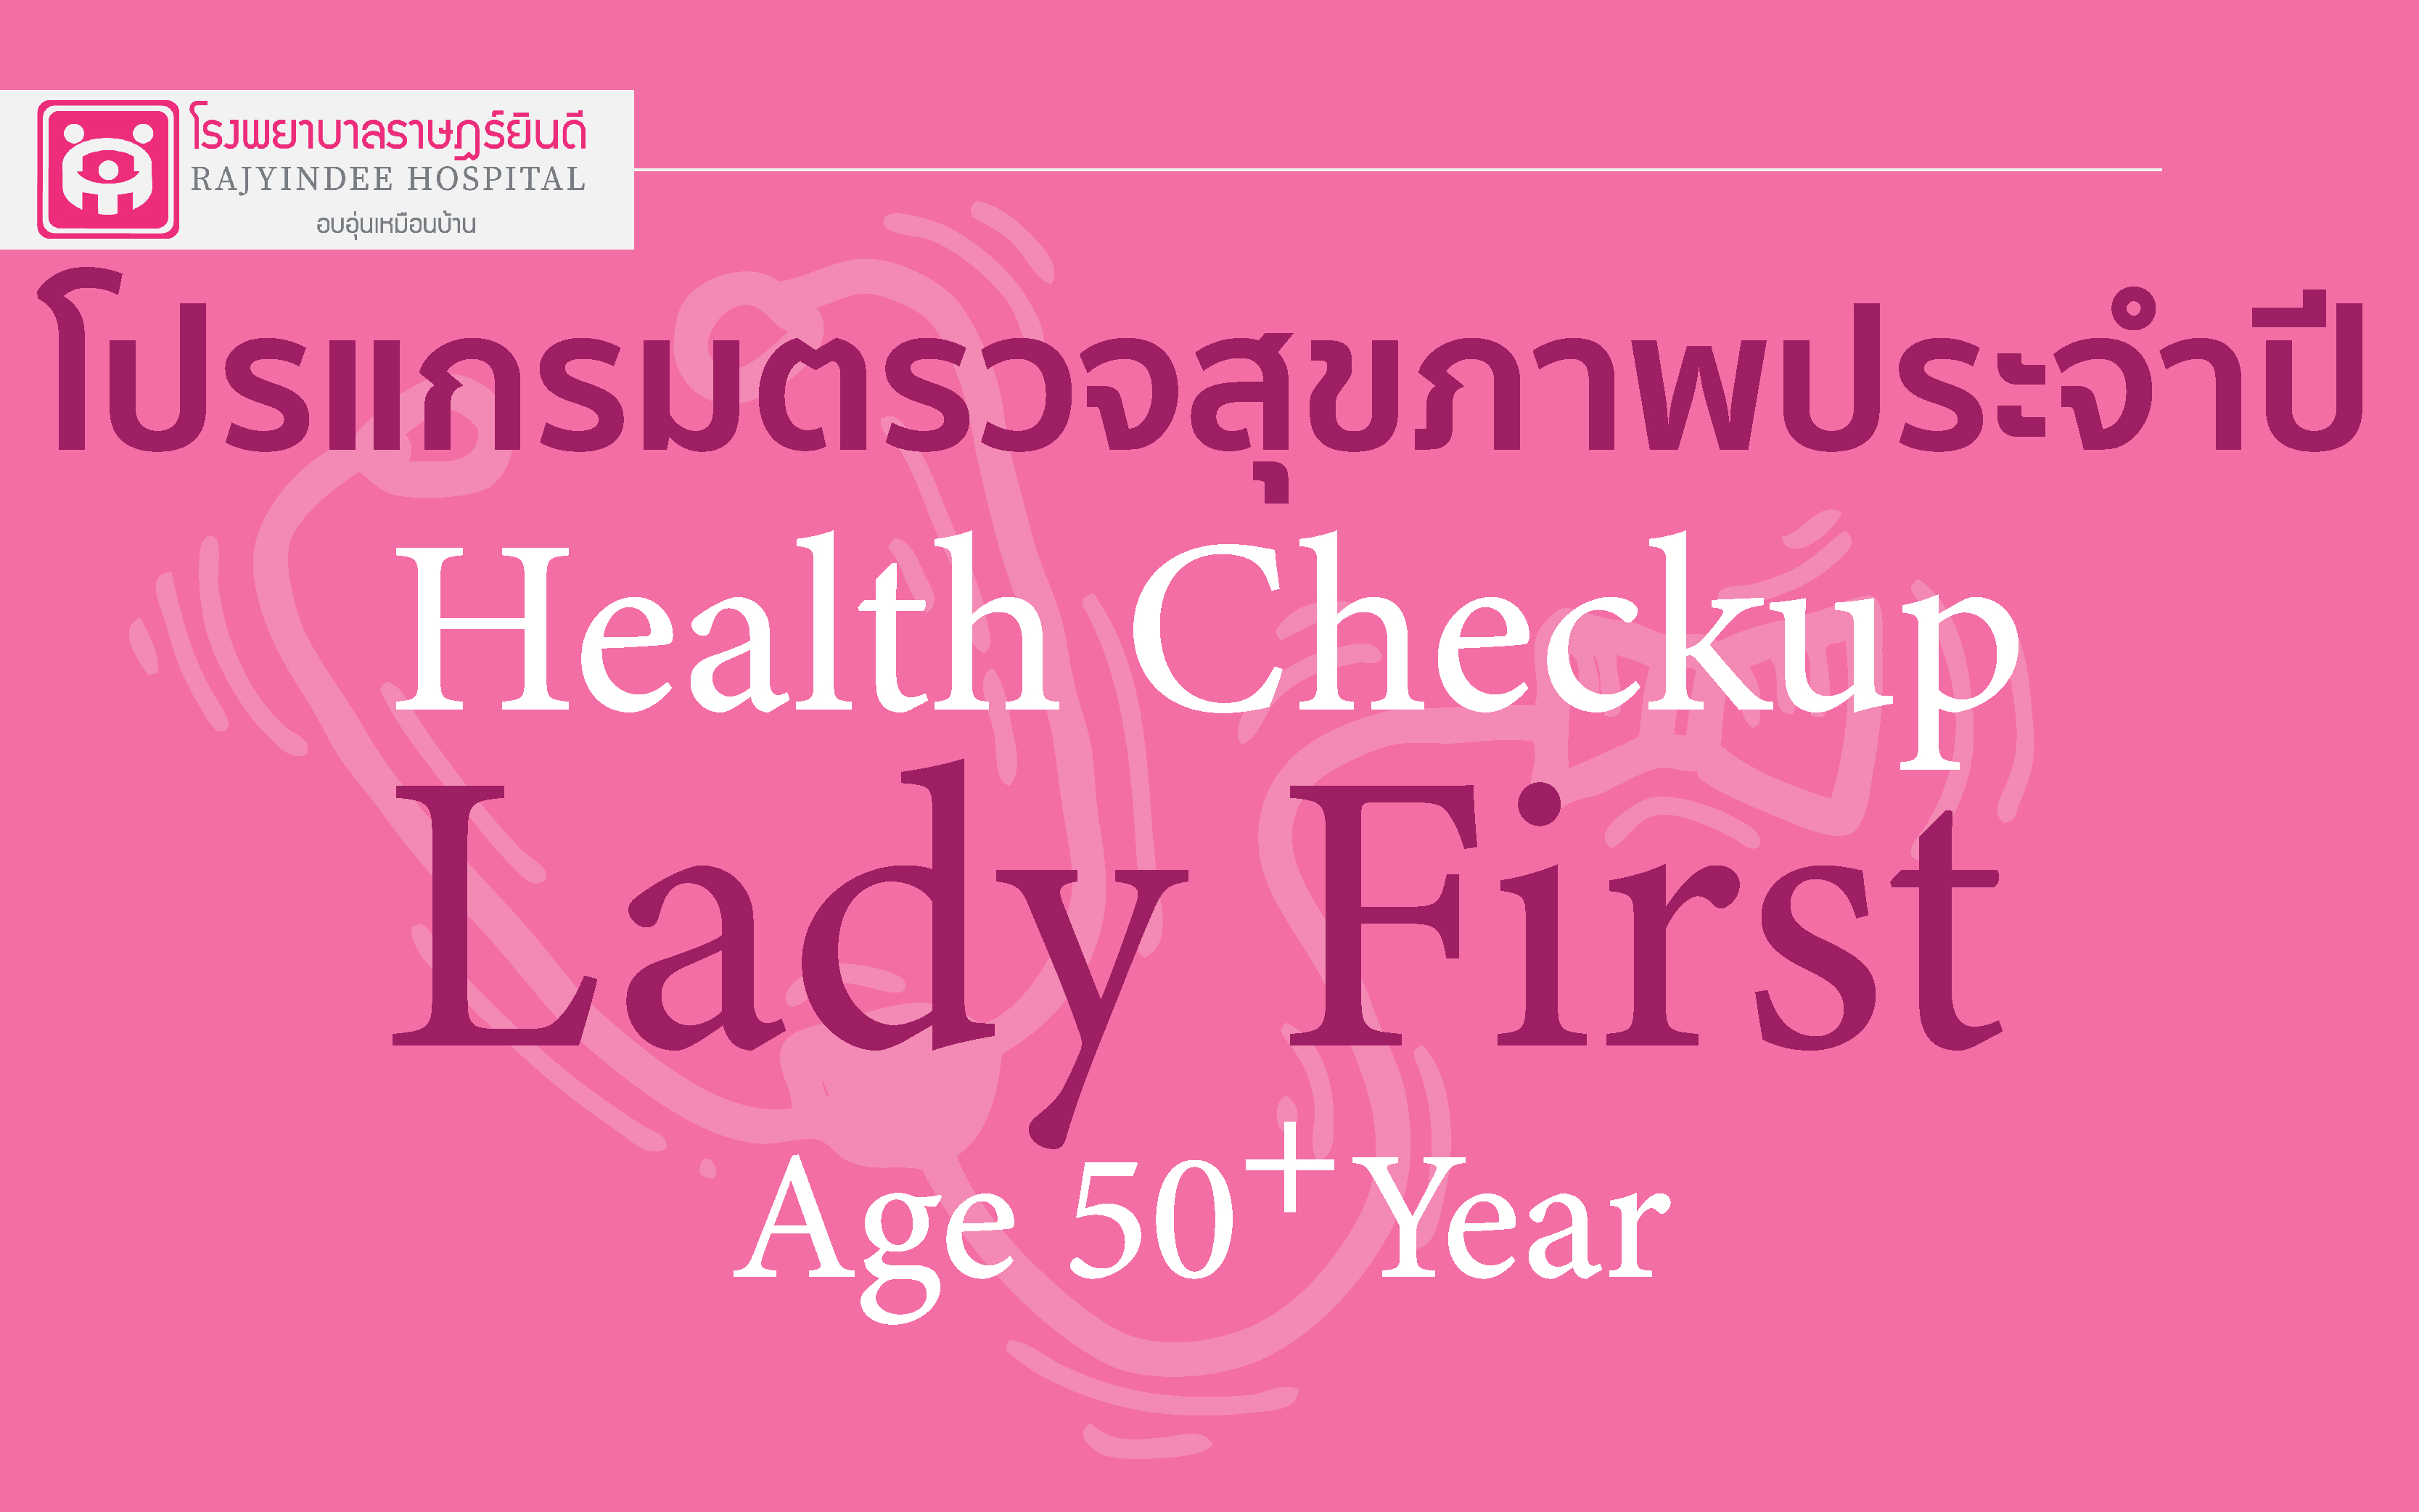 โปรแกรมตรวจสุขภาพ  Lady First  หญิง อายุ 50 ปีขึ้นไป 